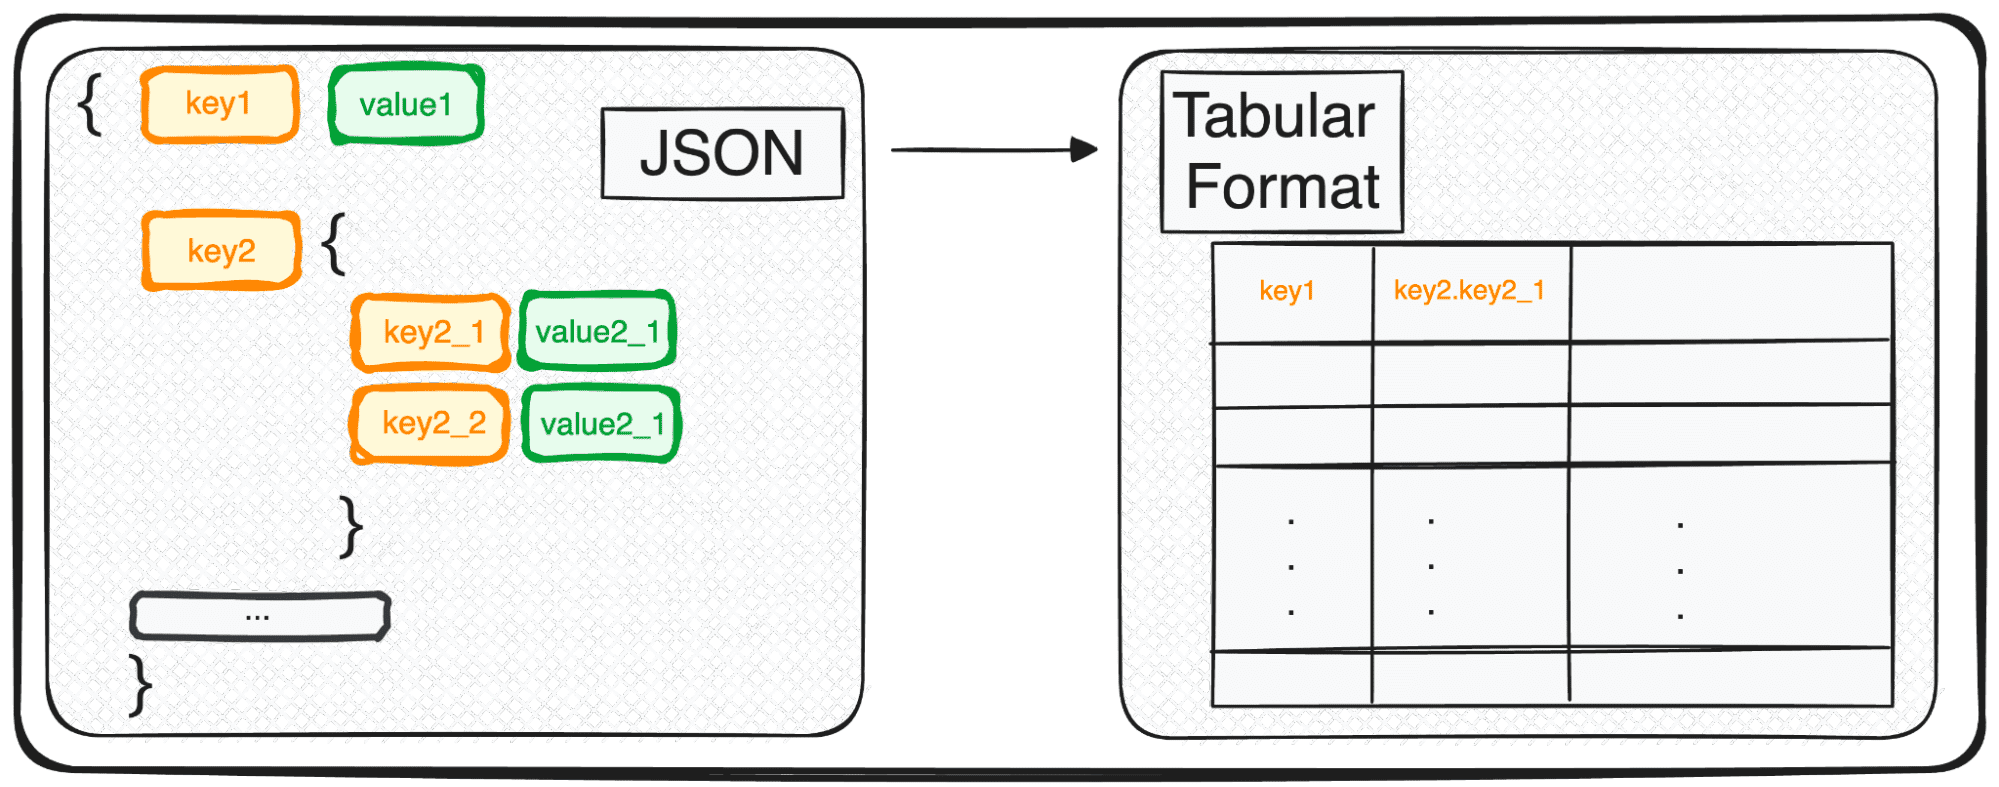 تحويل JSONs إلى إطارات بيانات Pandas: تحليلها بالطريقة الصحيحة